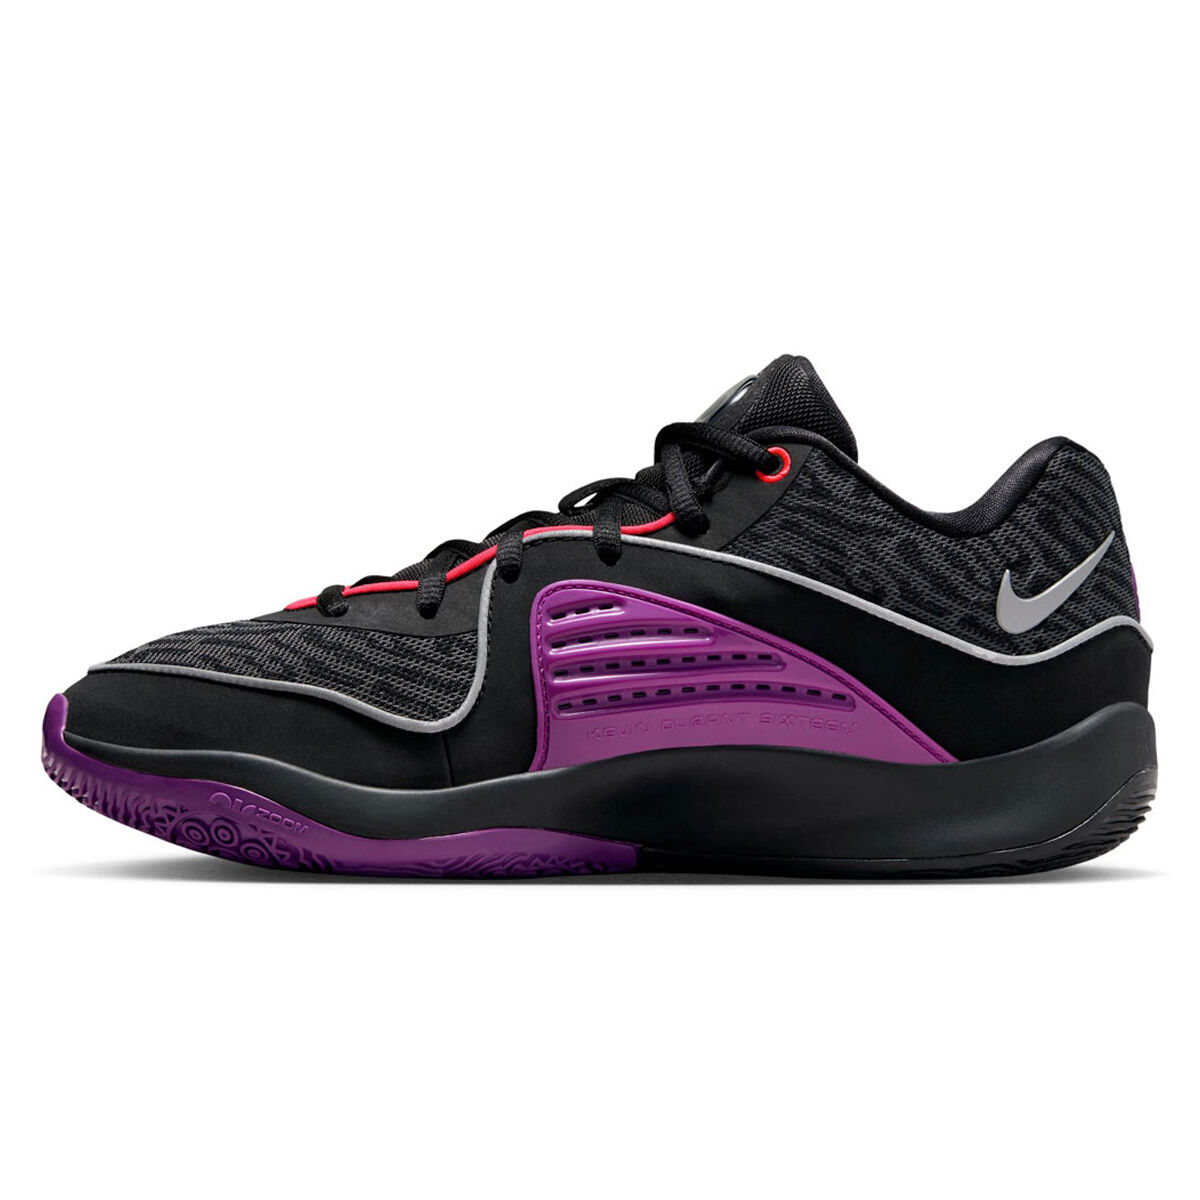 Kevin Durant - Nike KD Shoes, Fangear & Apparel - rebel